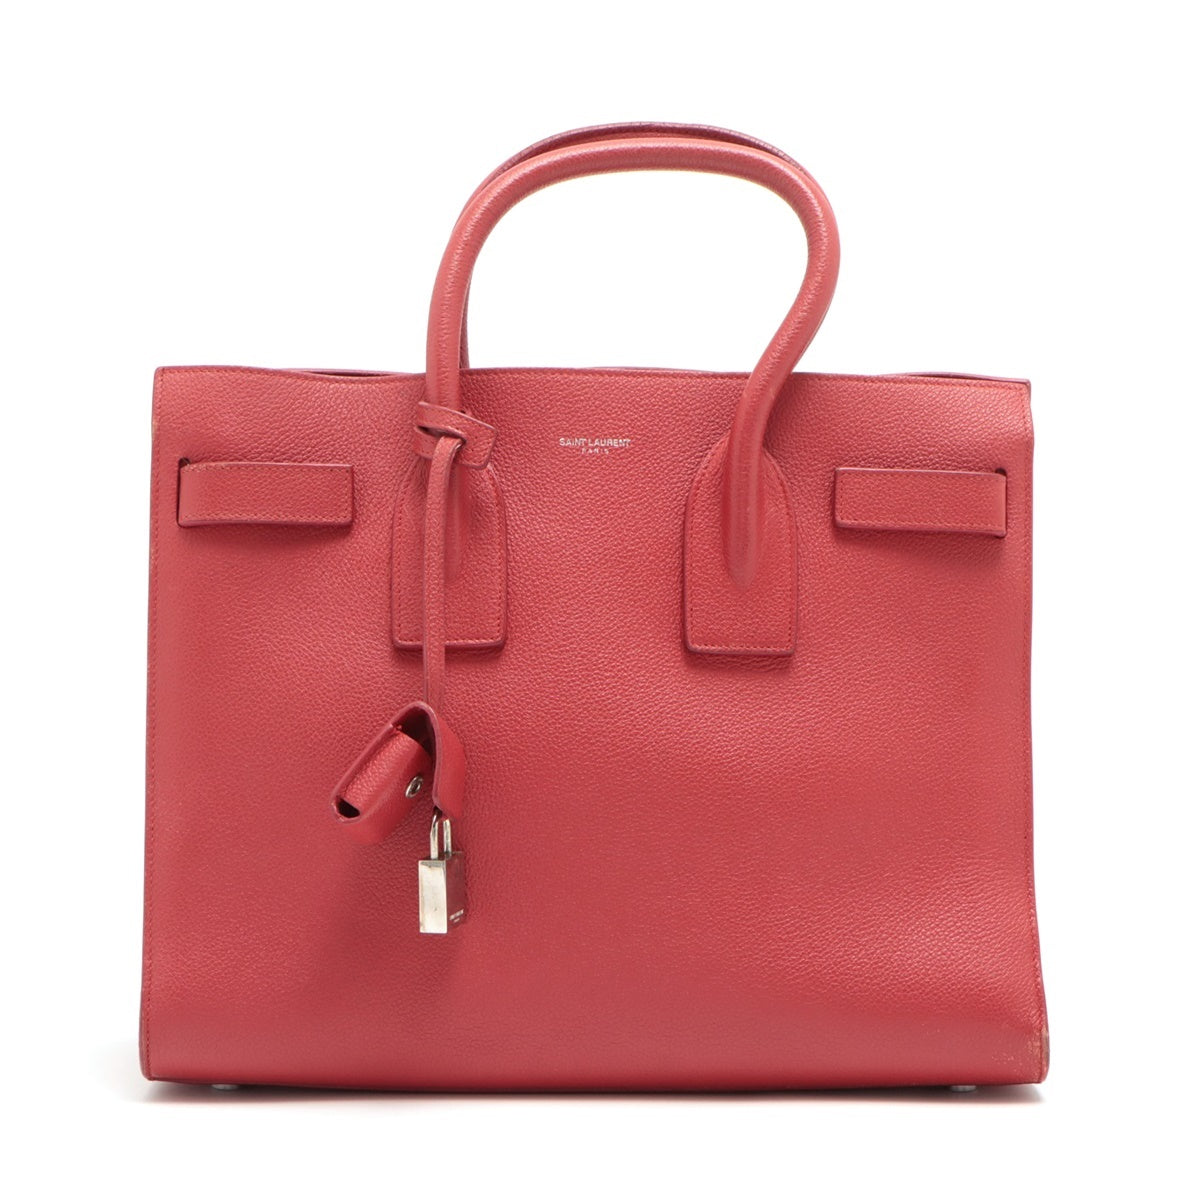 Saint Laurent Paris Sac de Jour Leather 2 Way Handbag Red 378299